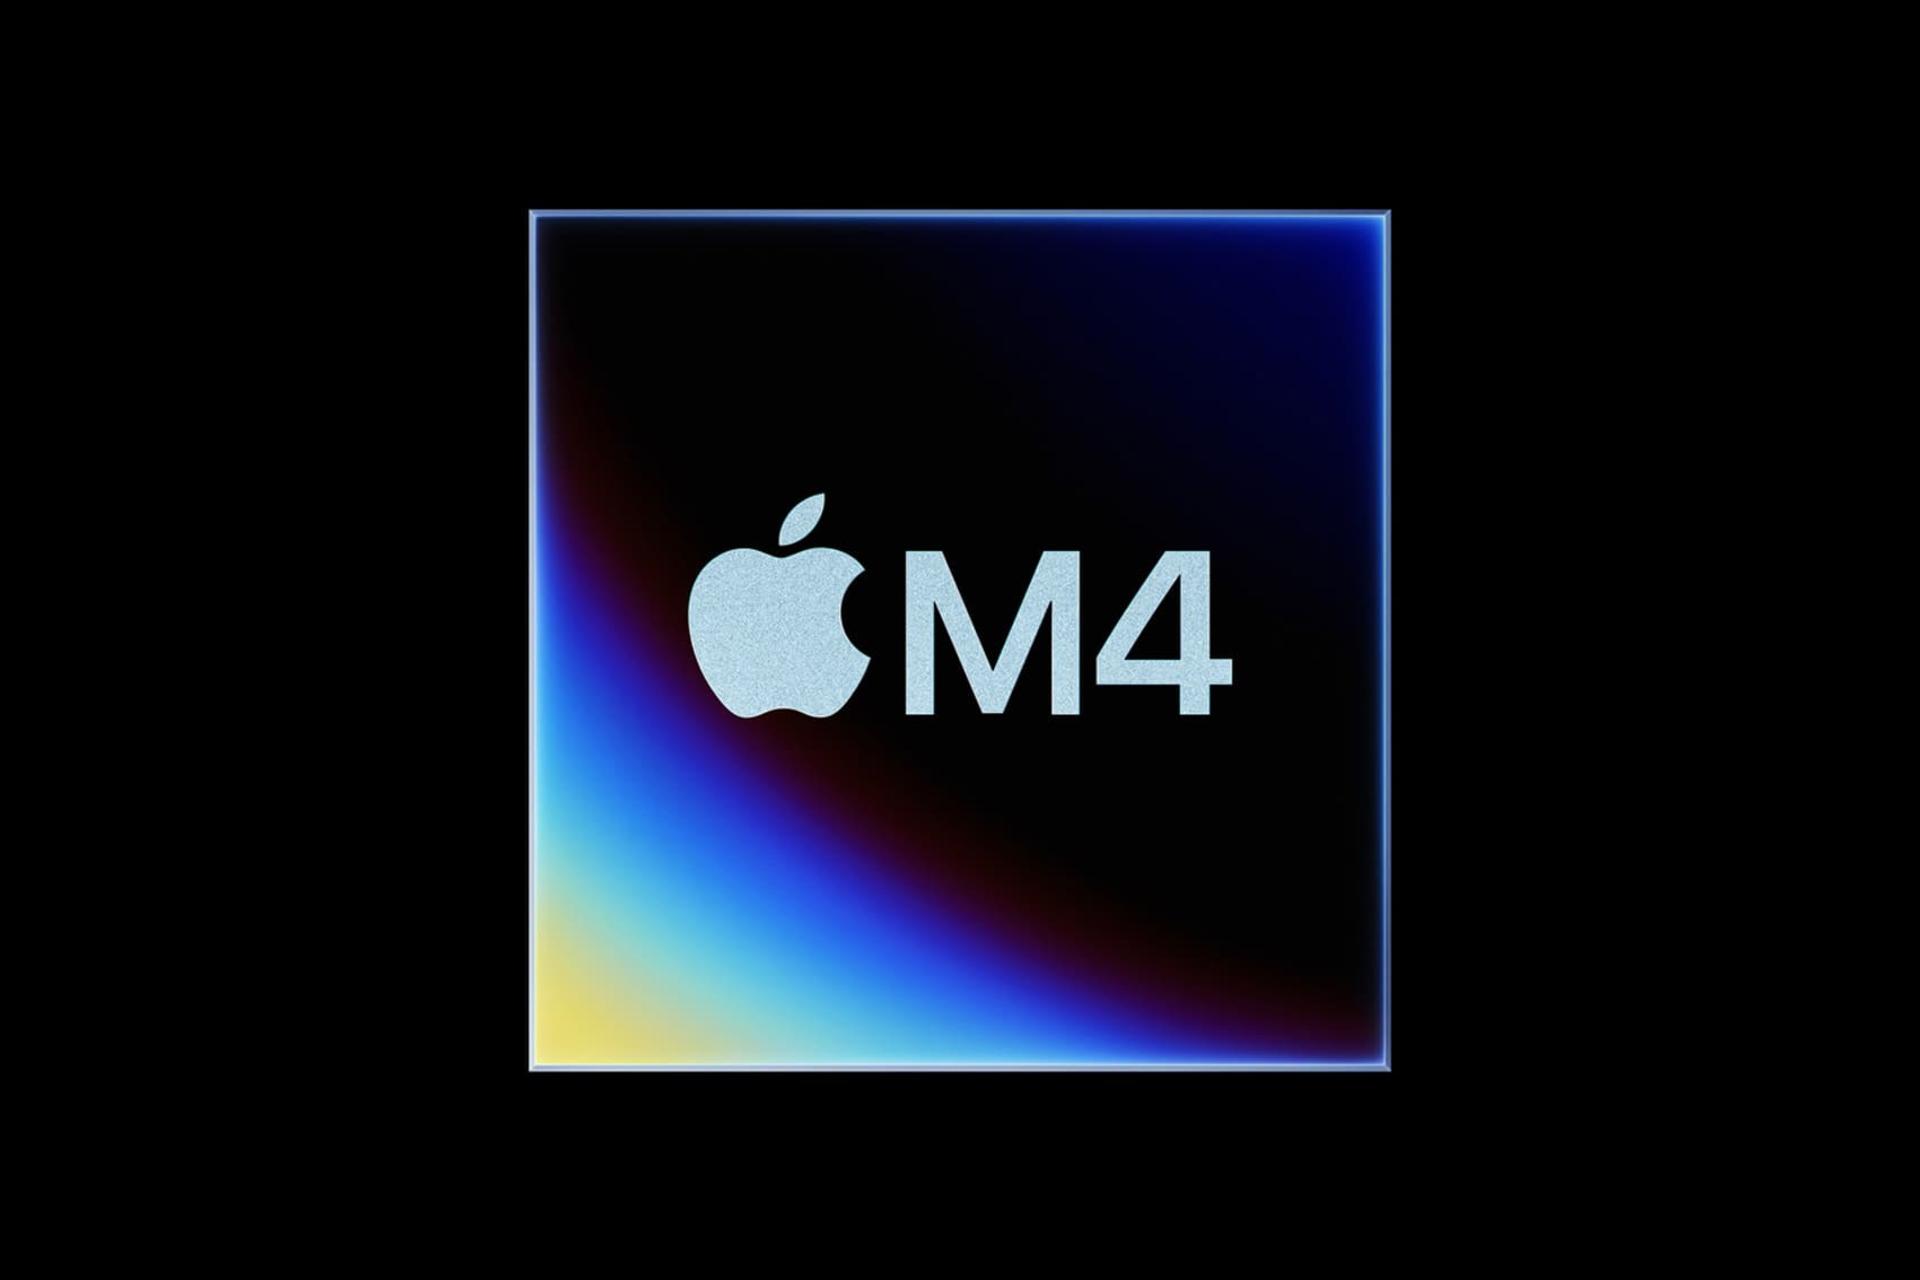 پردازنده Apple M4 اپل از نمای جلو طرح گرافیکی